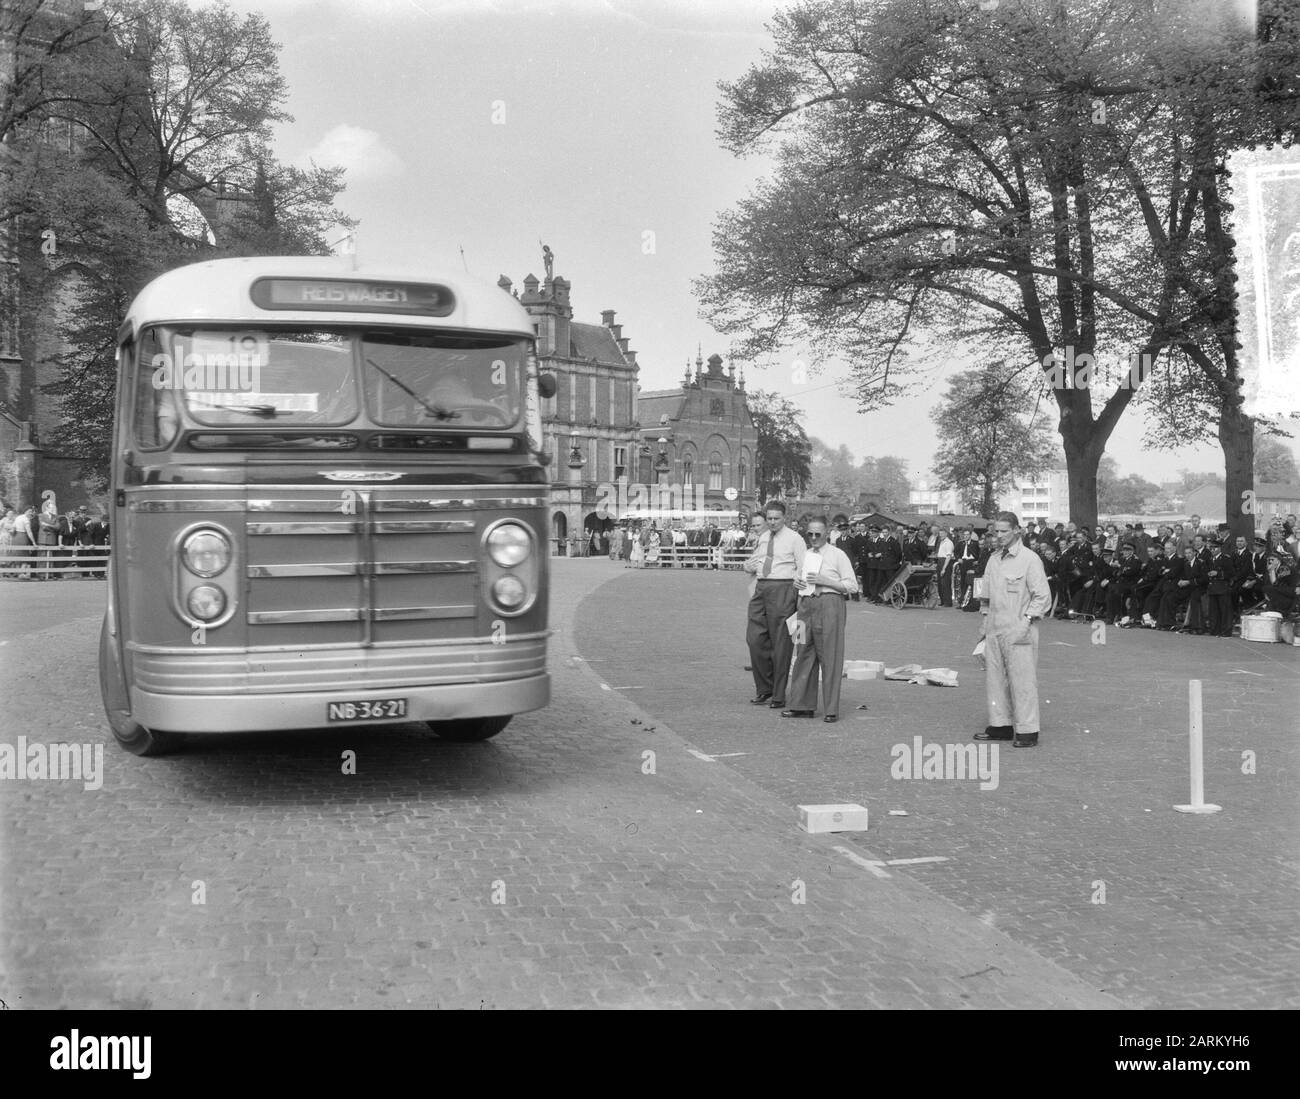 Tourwagenrallye Einreiseprüfung in Arnhem (Oeverstraat aan het Duivelshuis) Datum: 11. Mai 1954 Ort: Arnhem Schlagwörter: Busse, Prüfungen, Rallyes Stockfoto